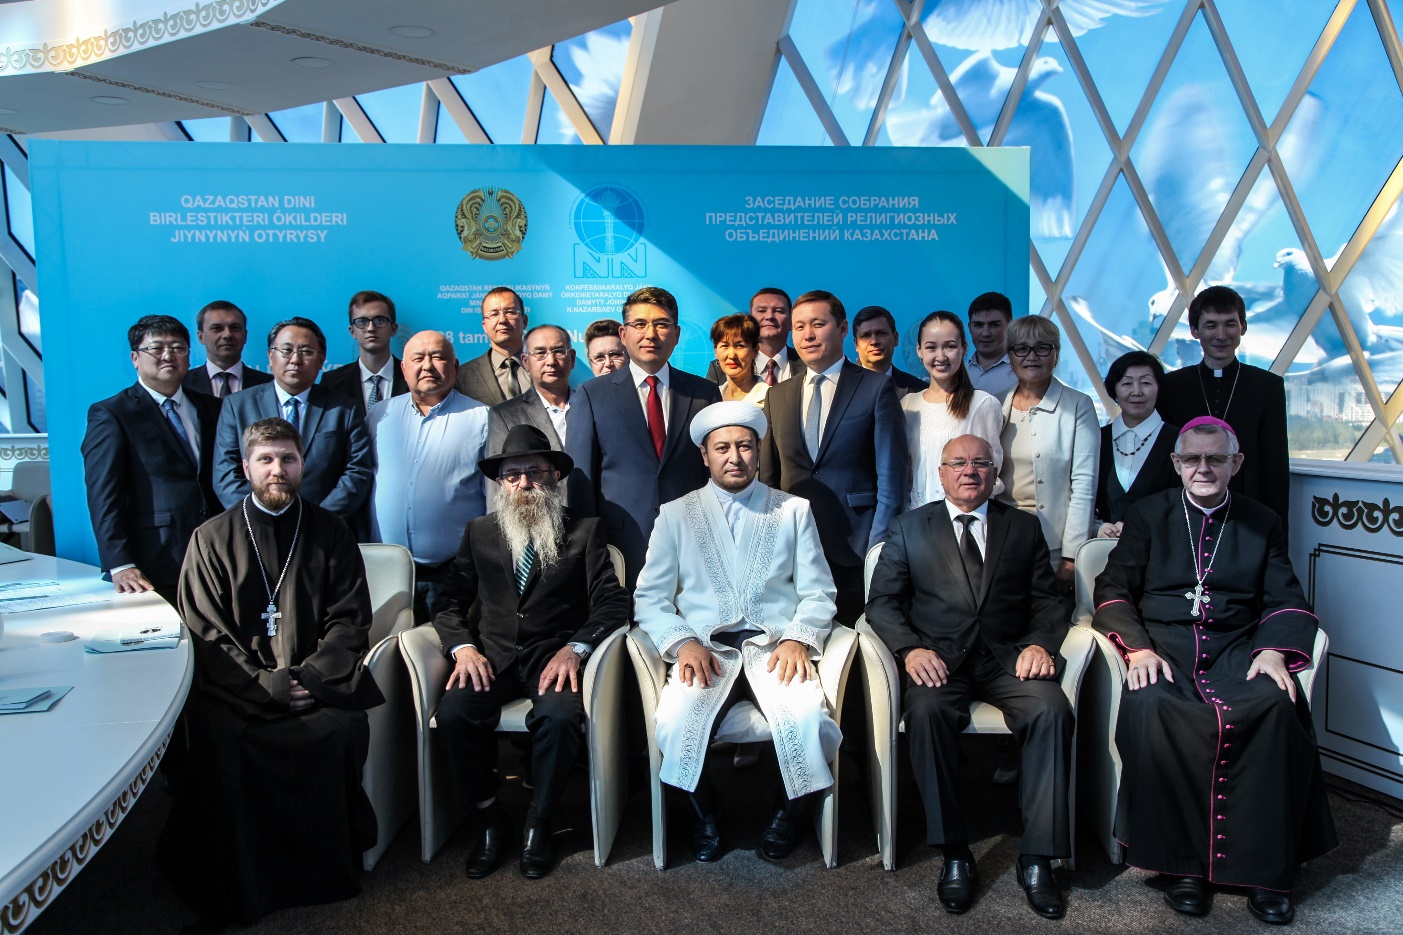 Очередное заседание Собрания представителей религиозных объединений Казахстана